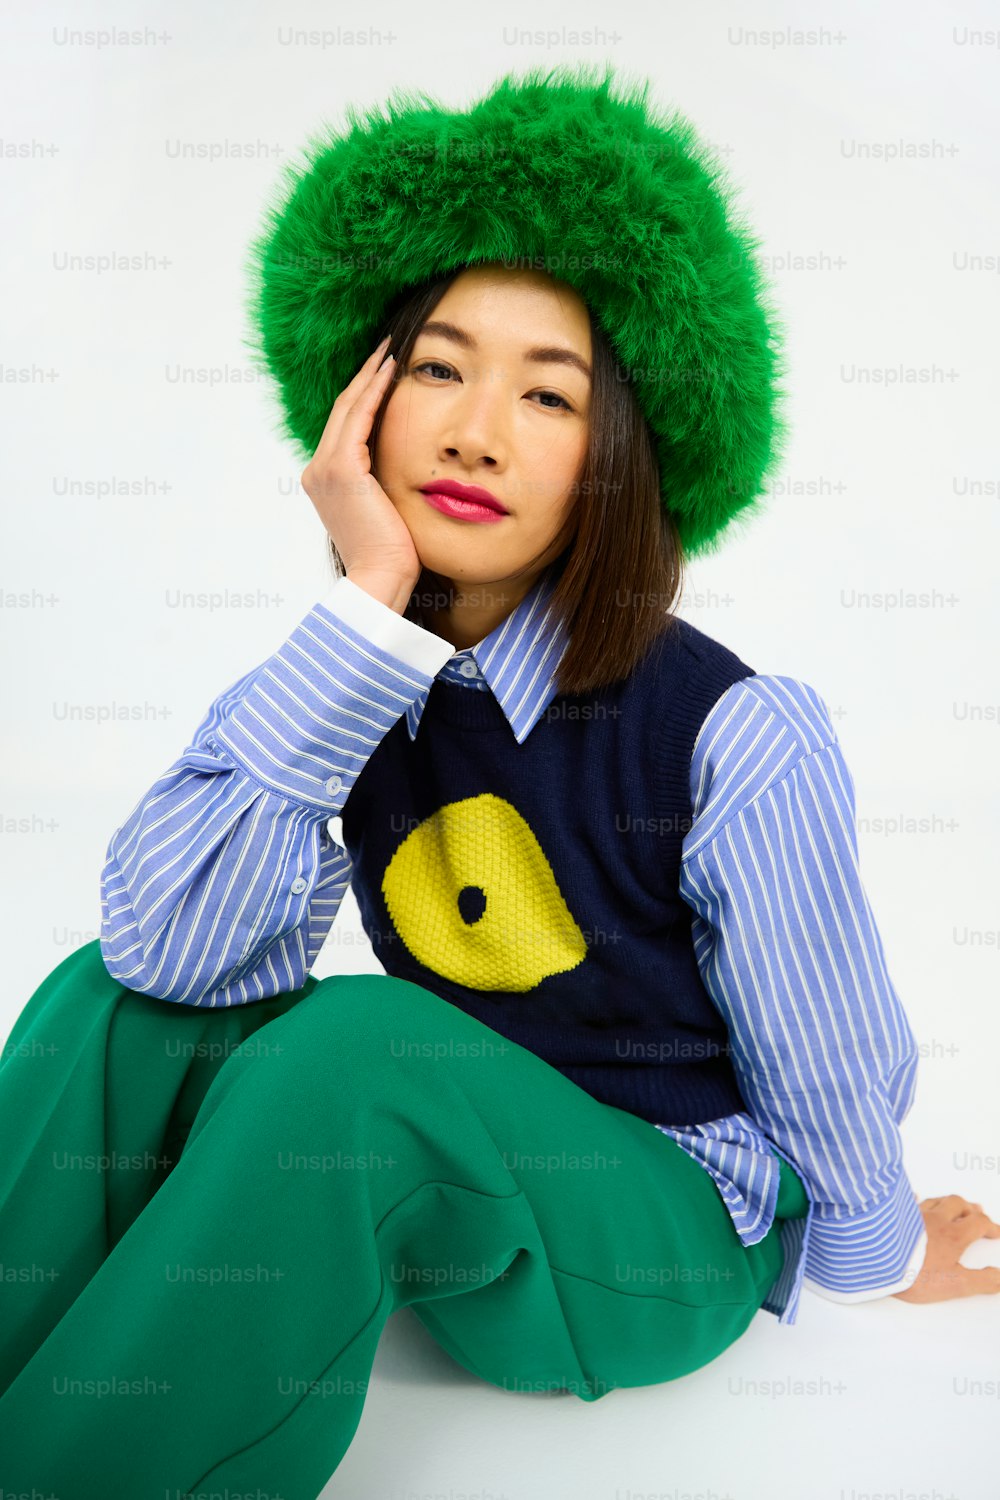 una mujer con sombrero verde y pantalones verdes